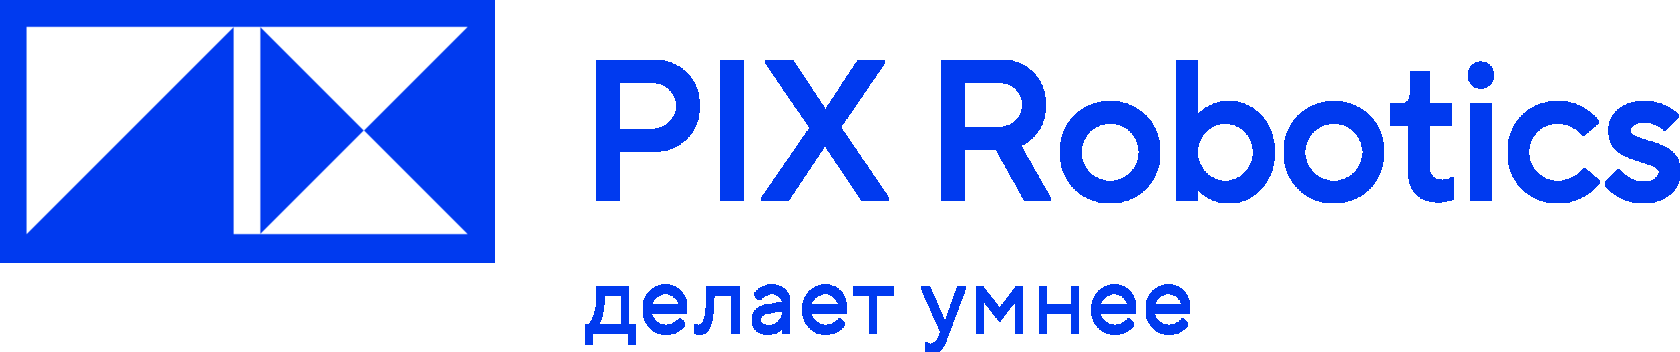 Программные продукты экосистемы PIX Robotics полностью совместимы с процессорами Baikal-М